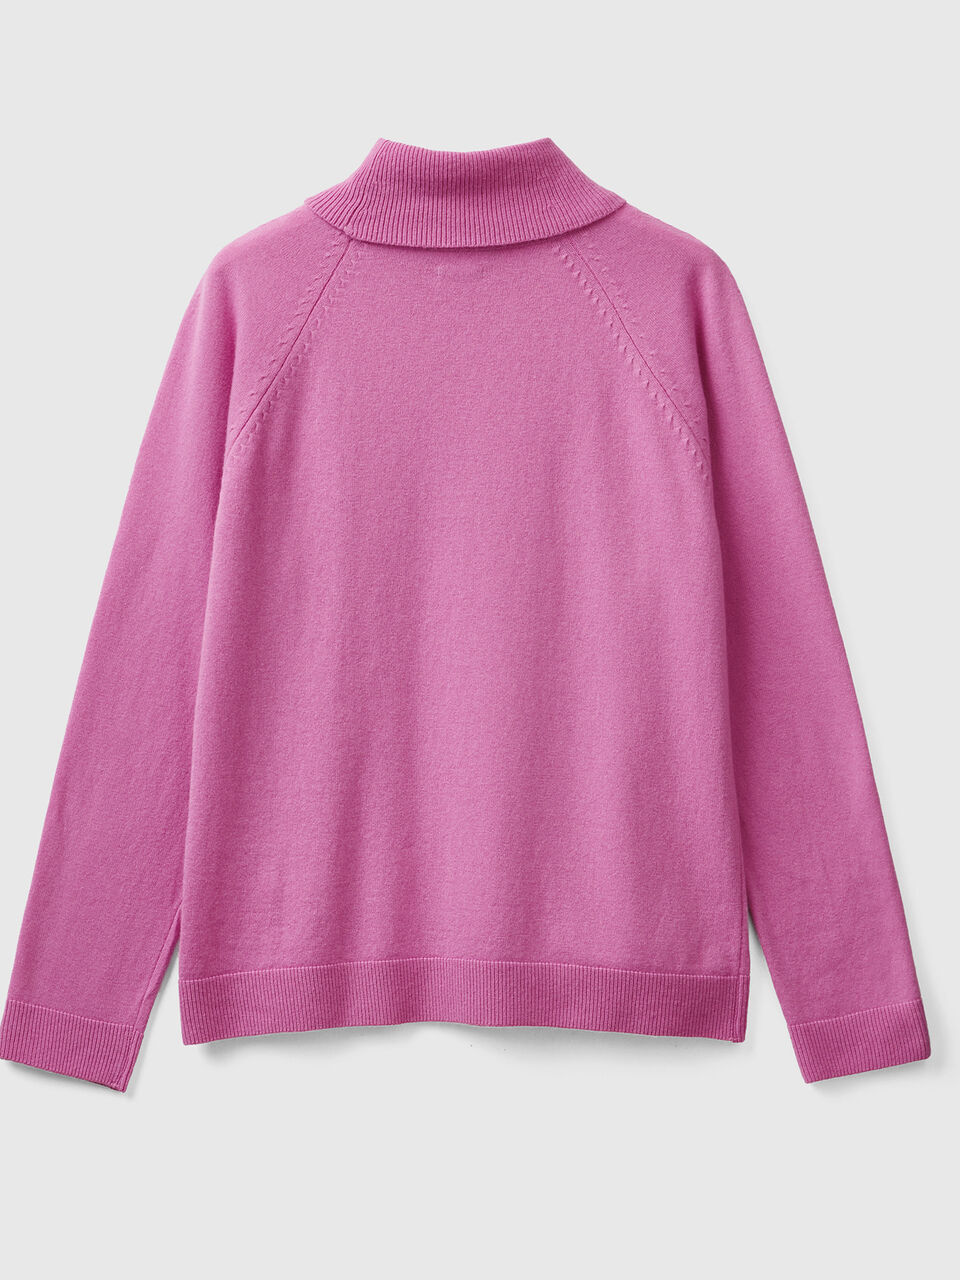 Jersey de cuello cisne rosa en mezcla de lana y cachemir - Rosa